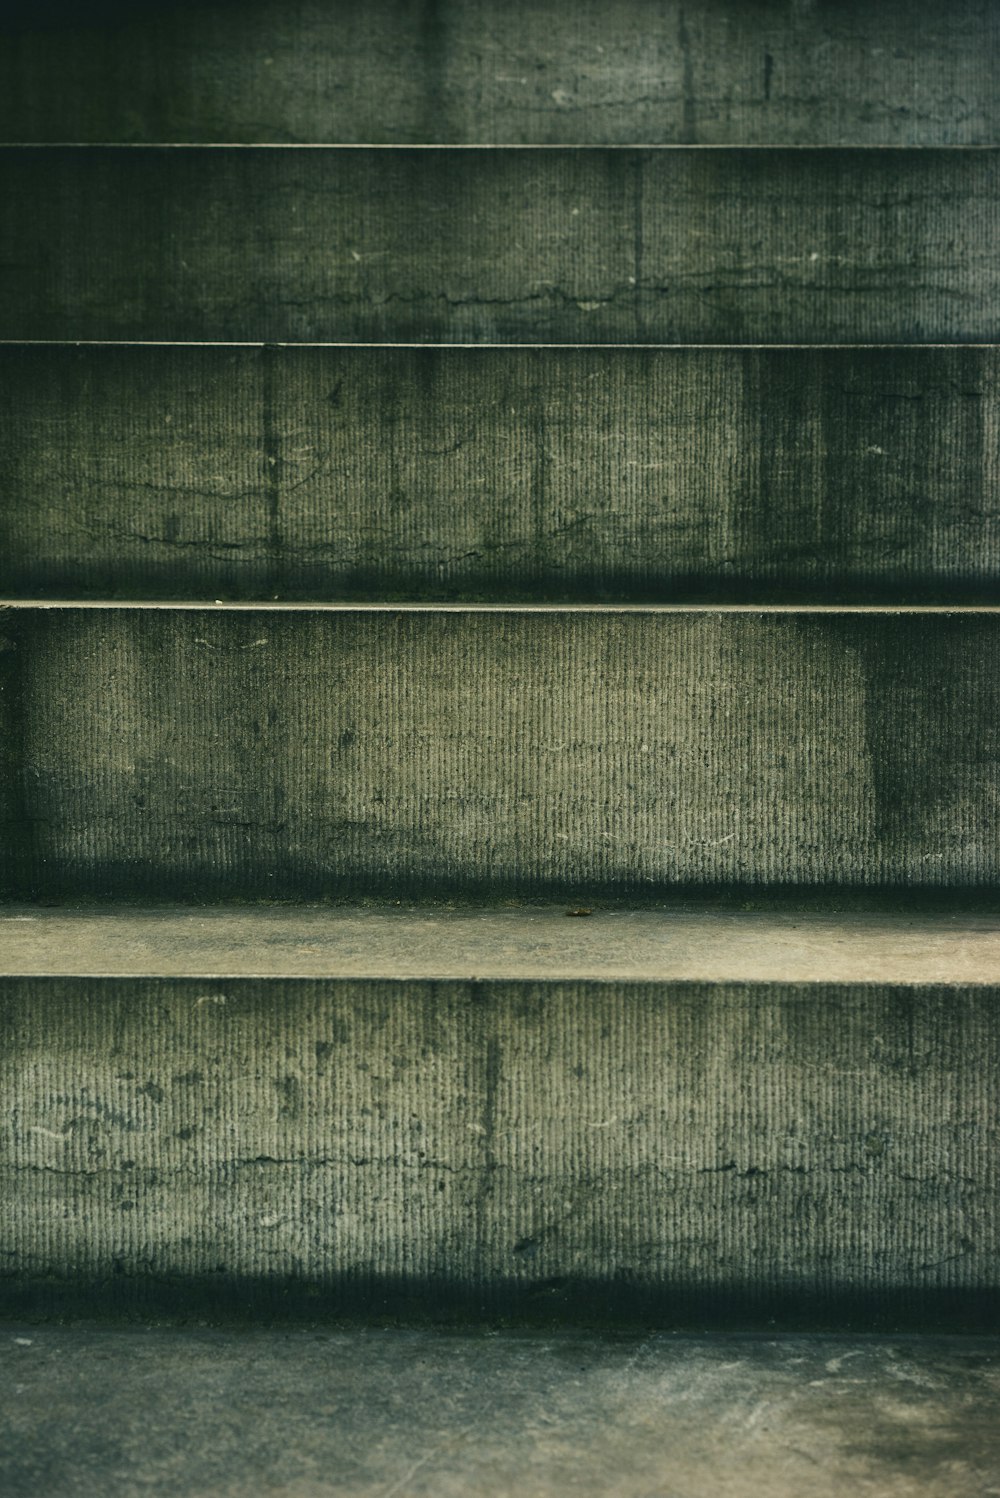 gray concrete staircase